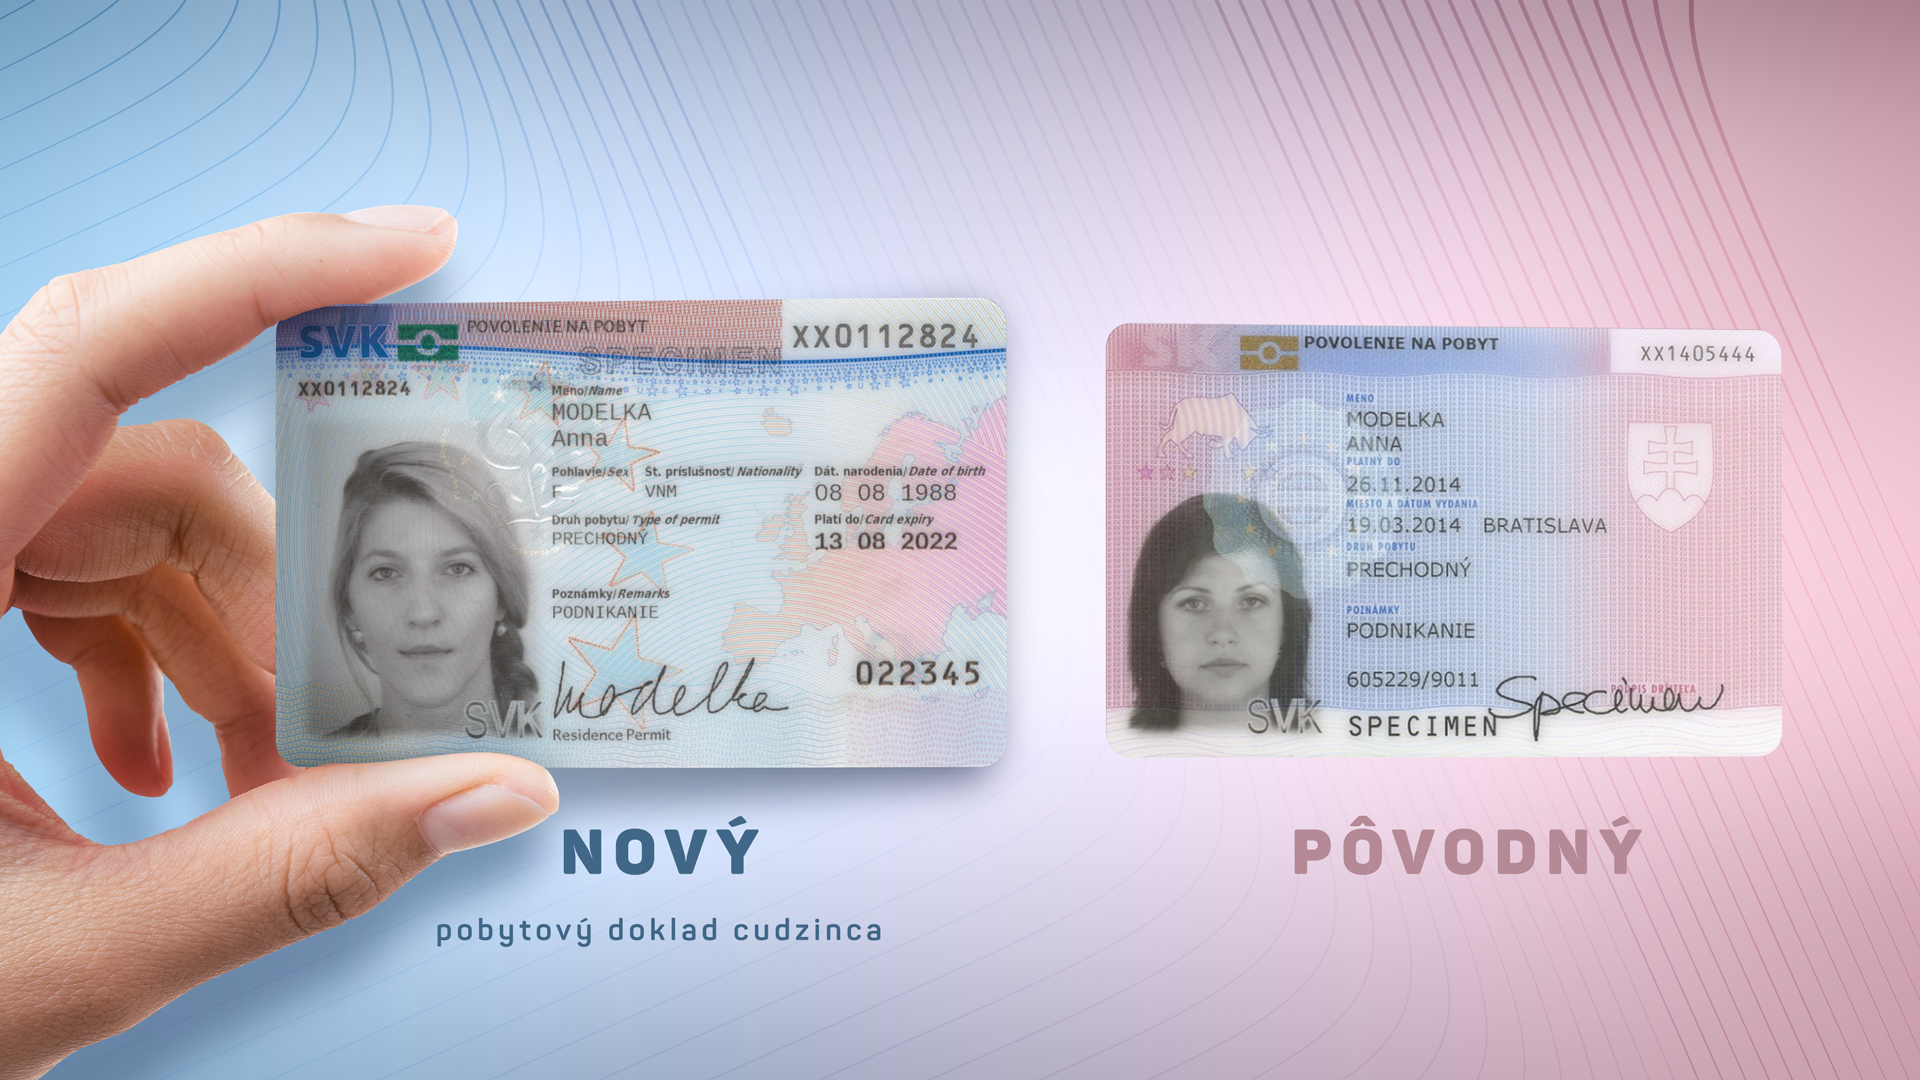 Как иммигрировать в словакию в 2022 году — все о визах и эмиграции